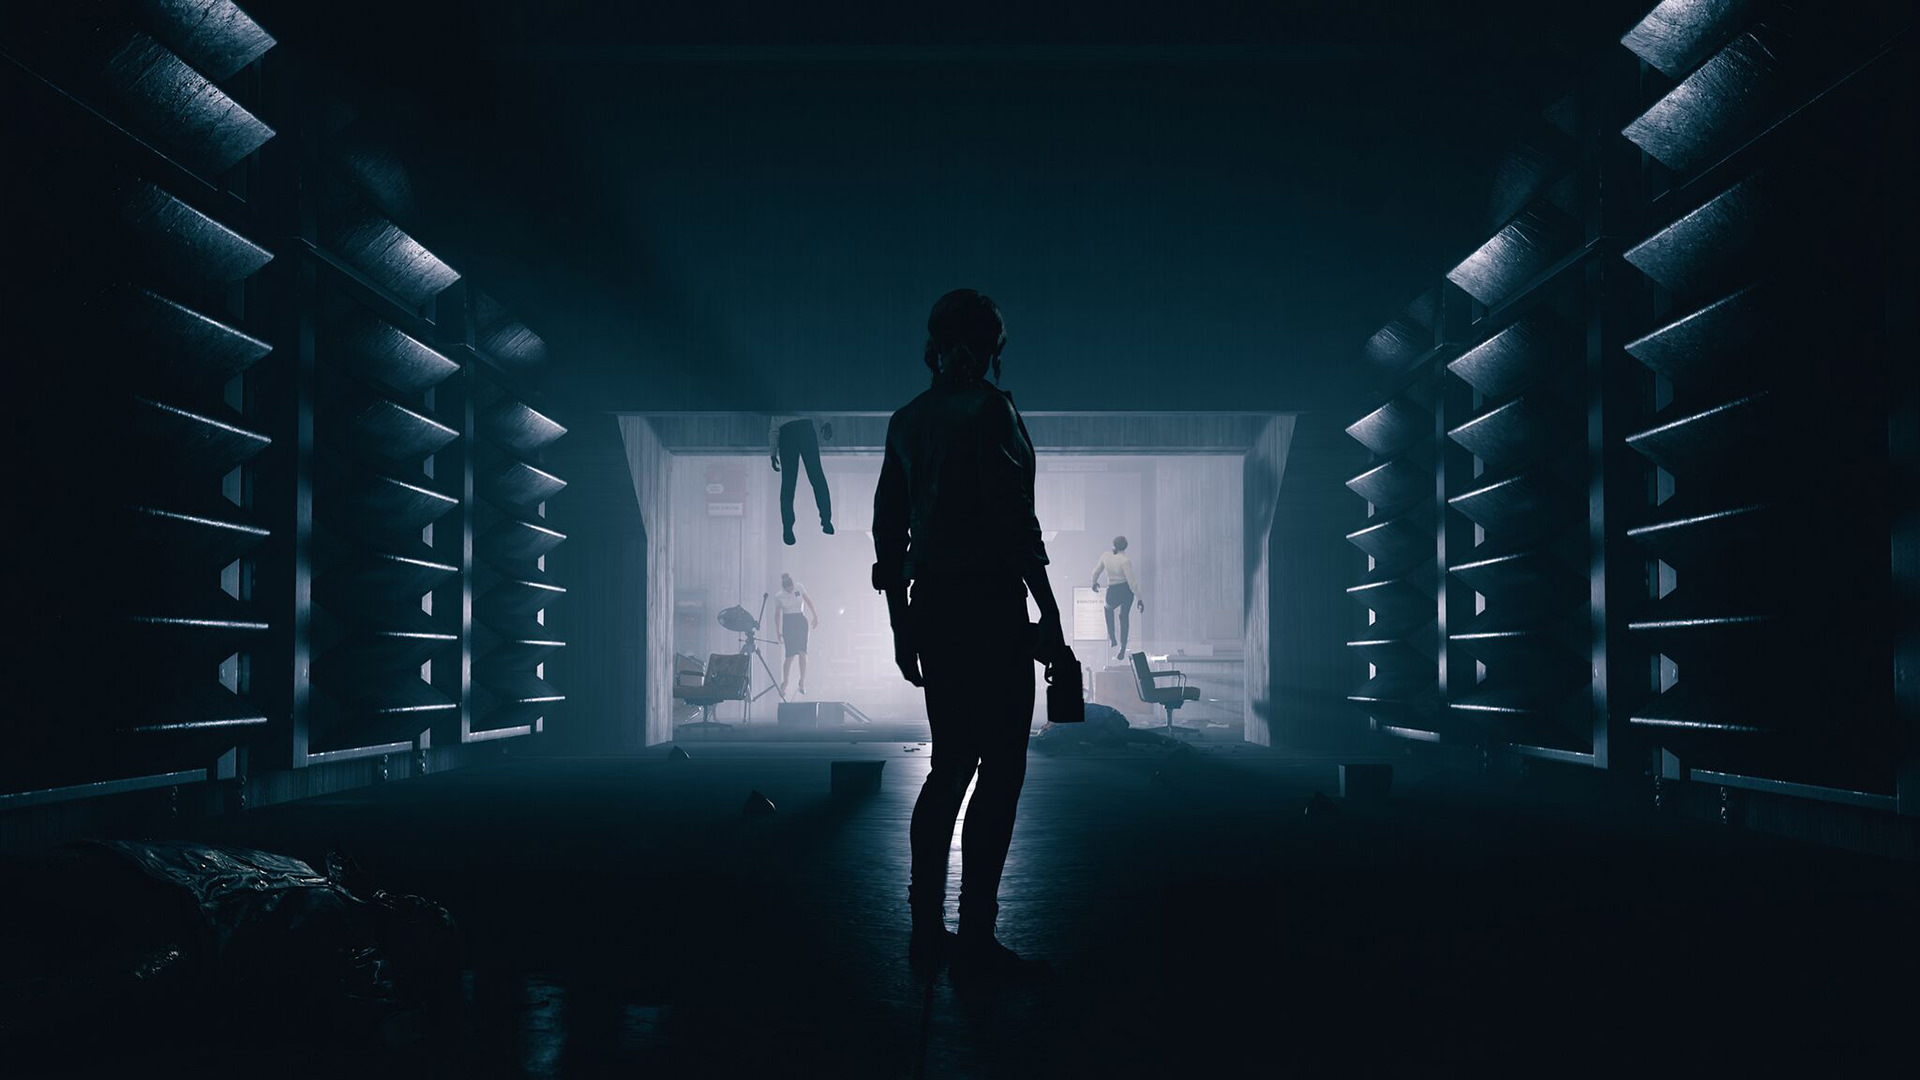 بازی Control آخرین ساخته استودیوی رمدی در محیط تاریک